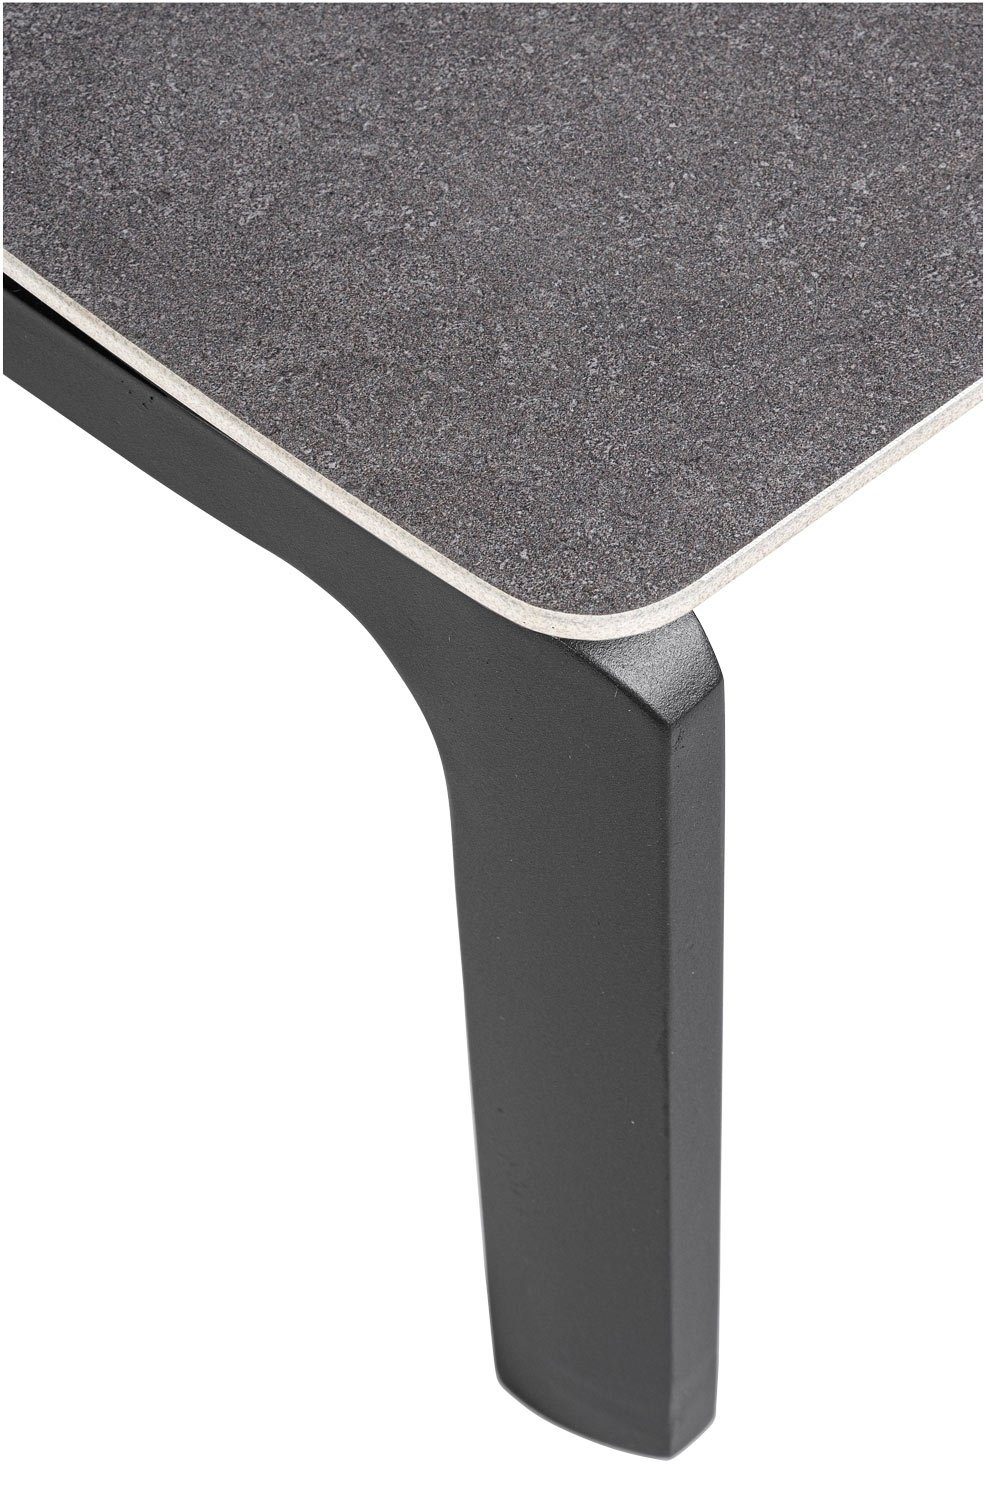 Natur24 Bizzotto Aluminium, 70 Tischplatte Keramik Loungetisch, 33 cm, aus Anthrazit, x Höhe JALISCO, cm, 120 Gartentisch